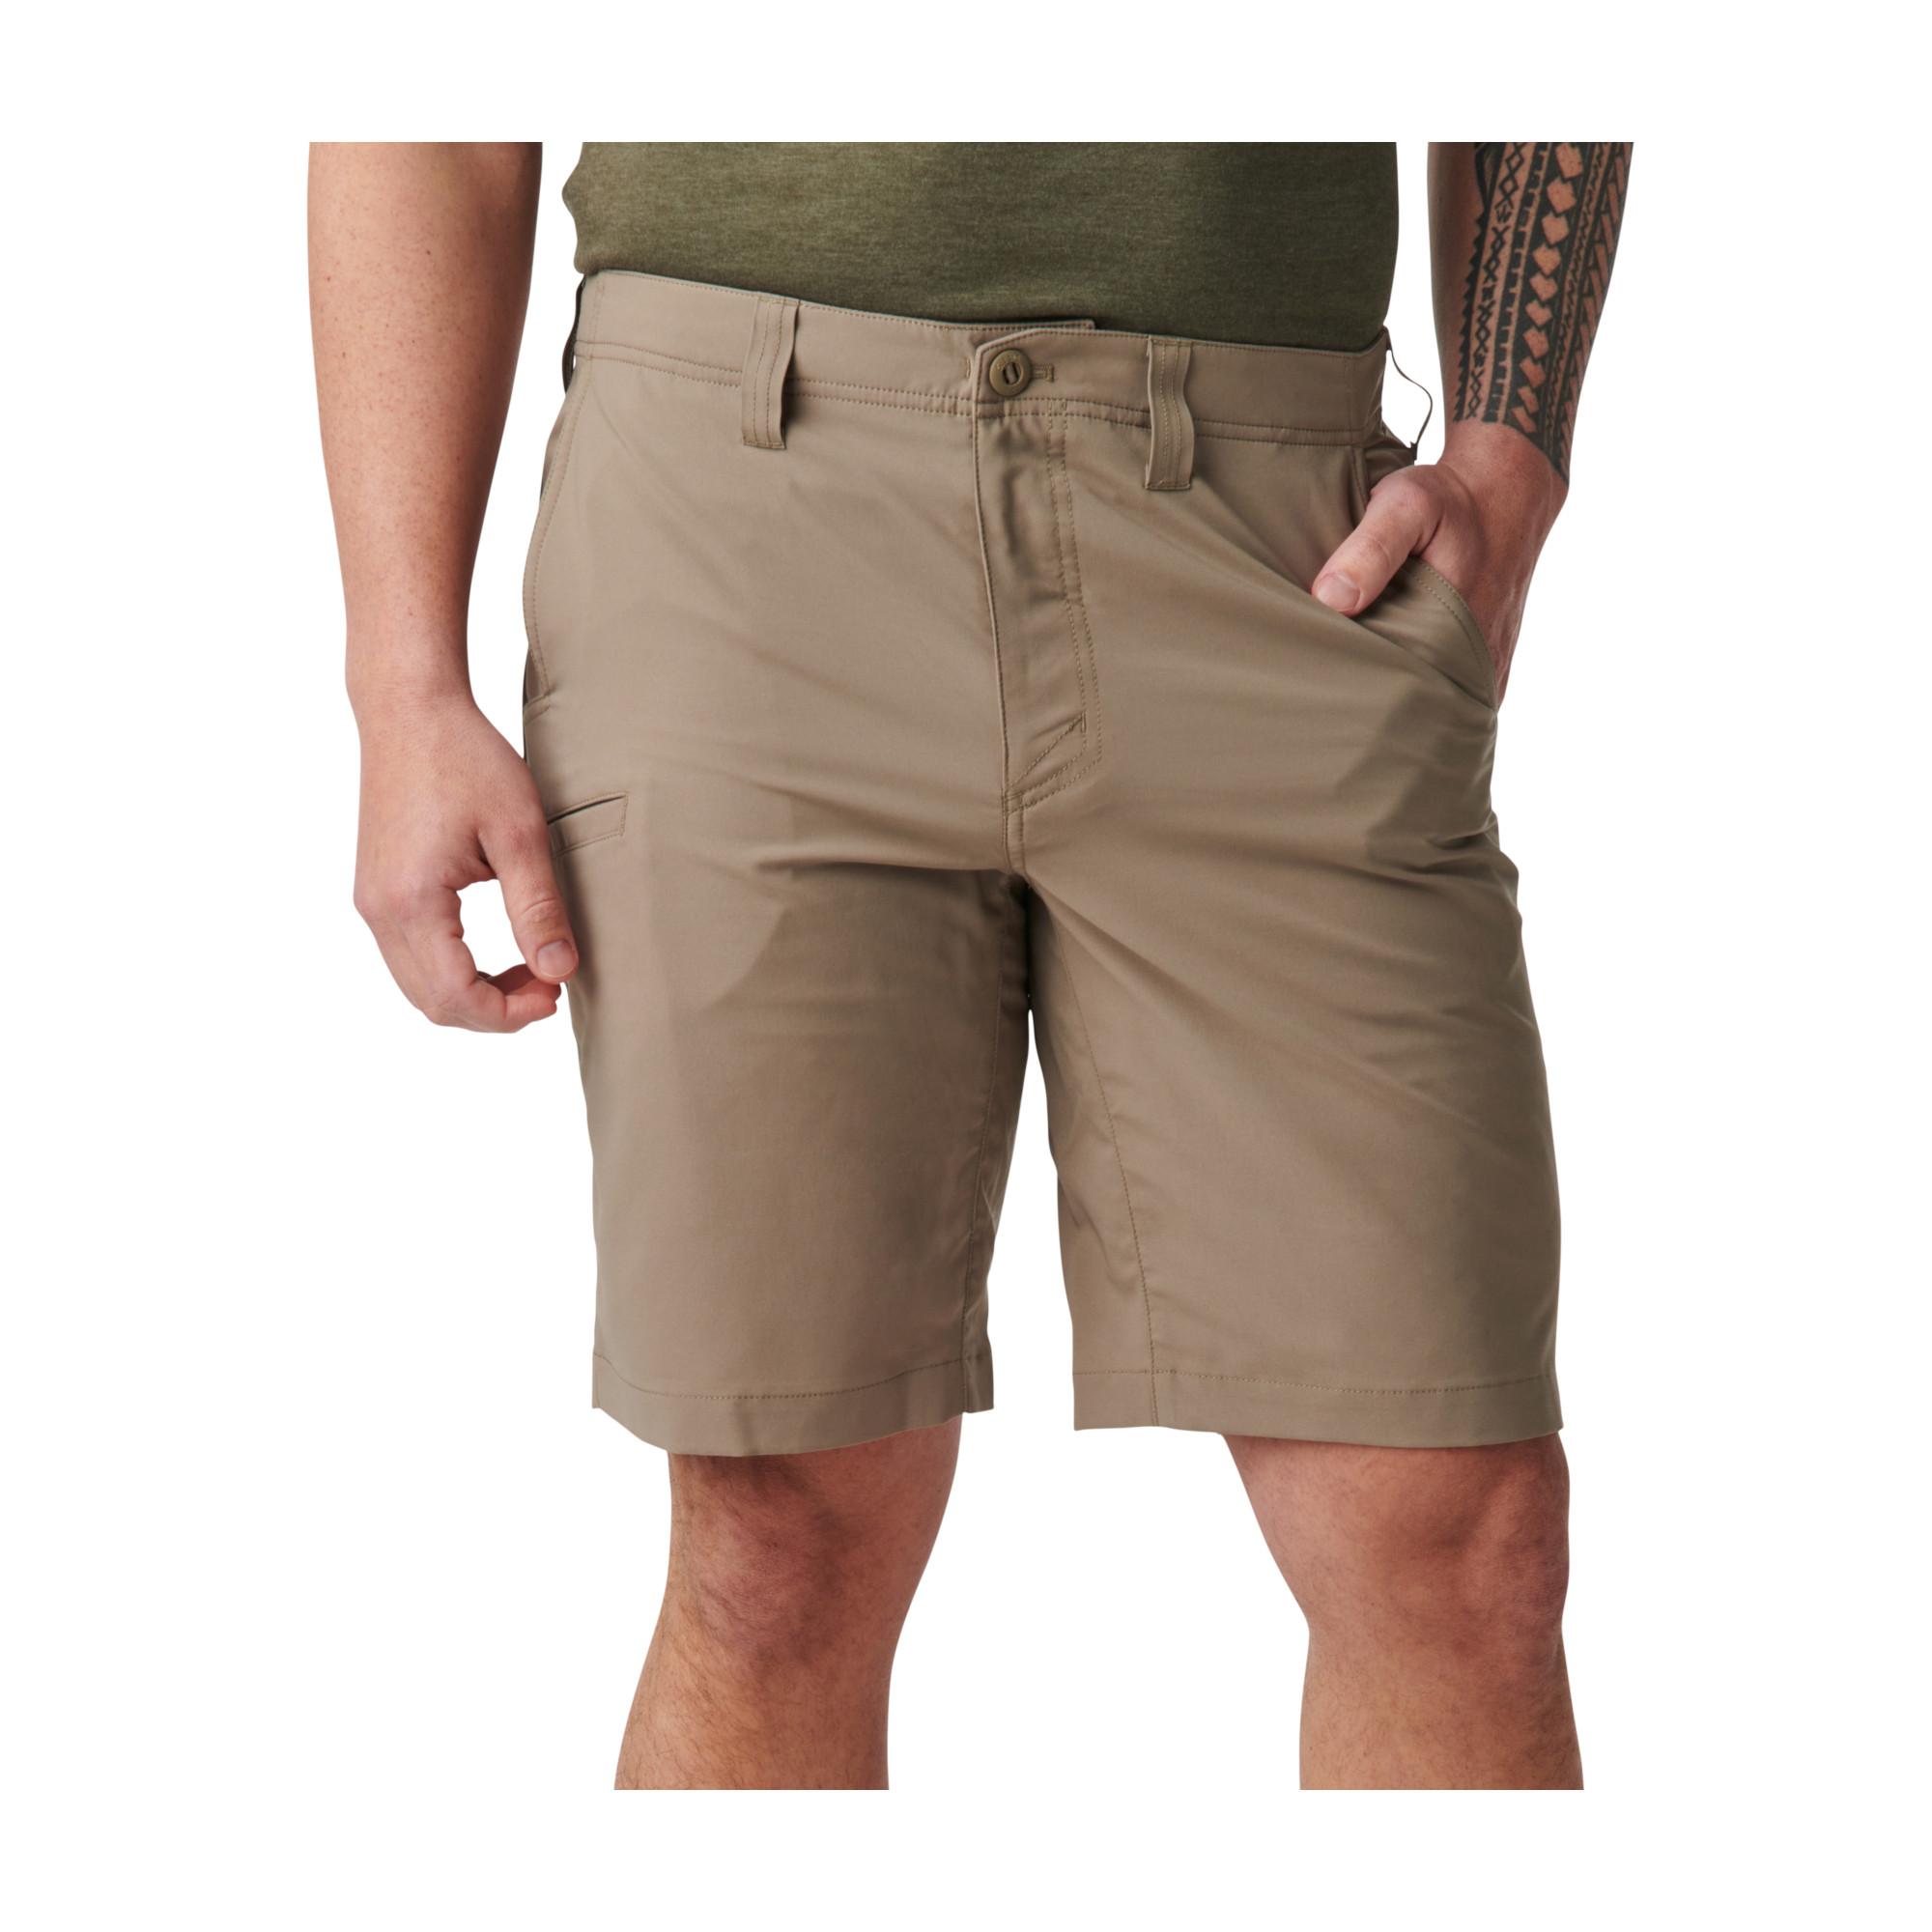 Dart short-10'' - Pants & shorts | Prefair